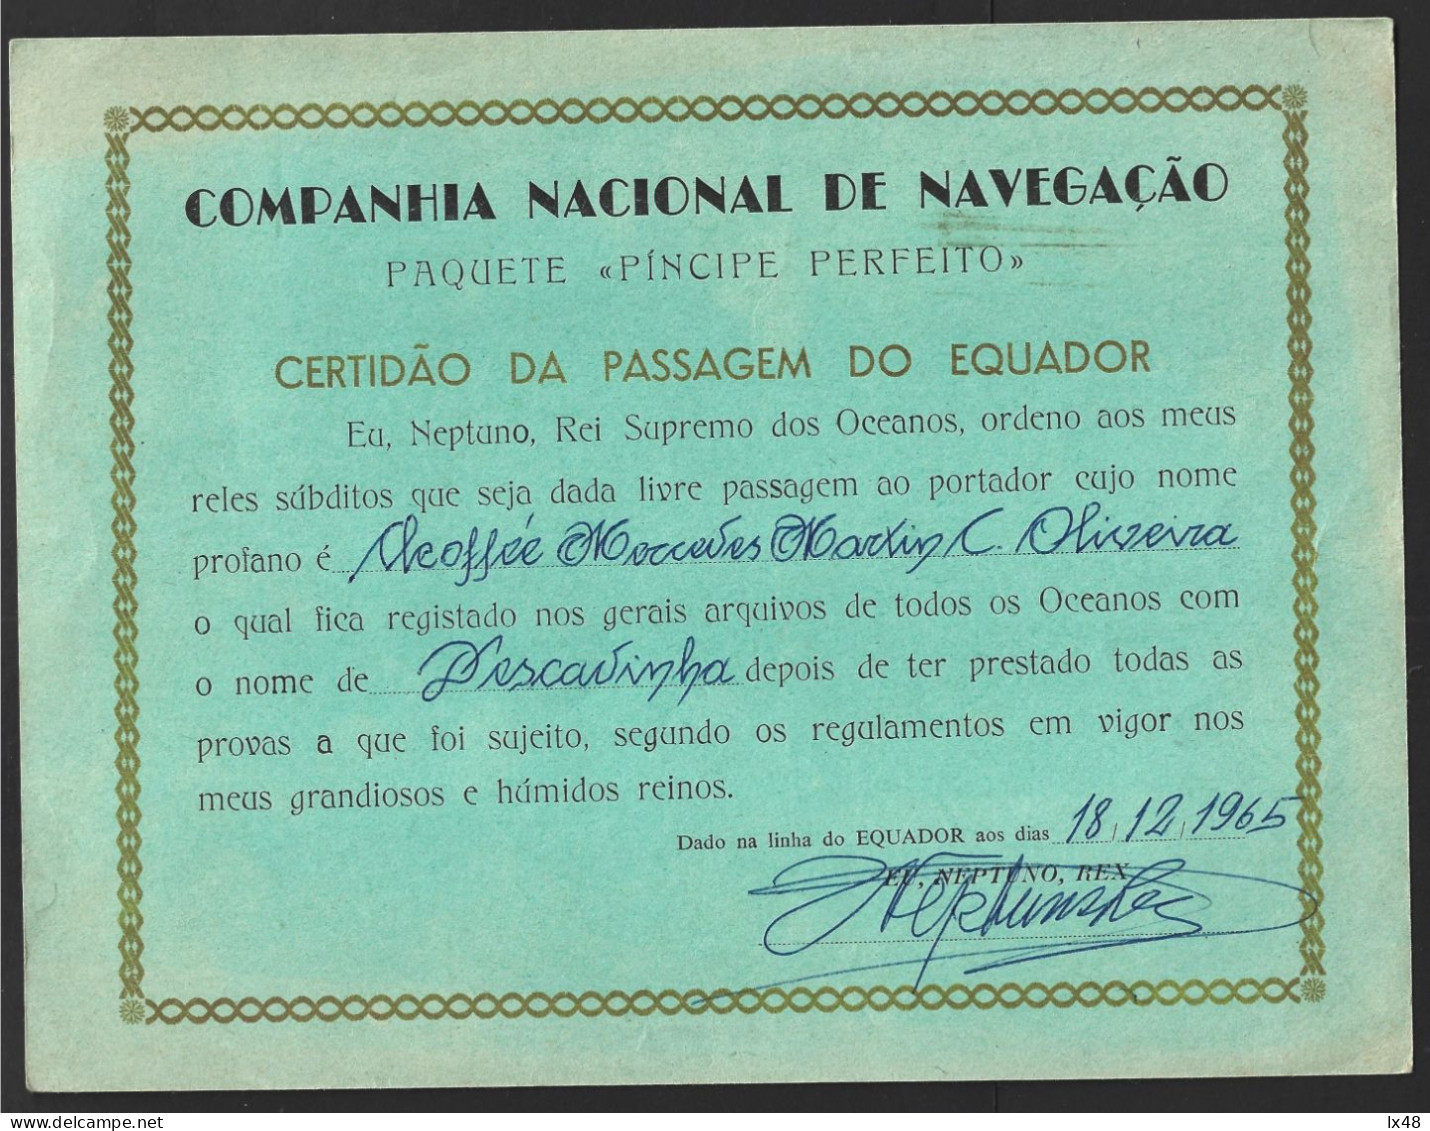 Ship 'Perfect Prince' Of CNN Companhia Nacional Navegação, Portugal. Certificate Of Crossing The 'Equator' Line In 1965. - Trasporti